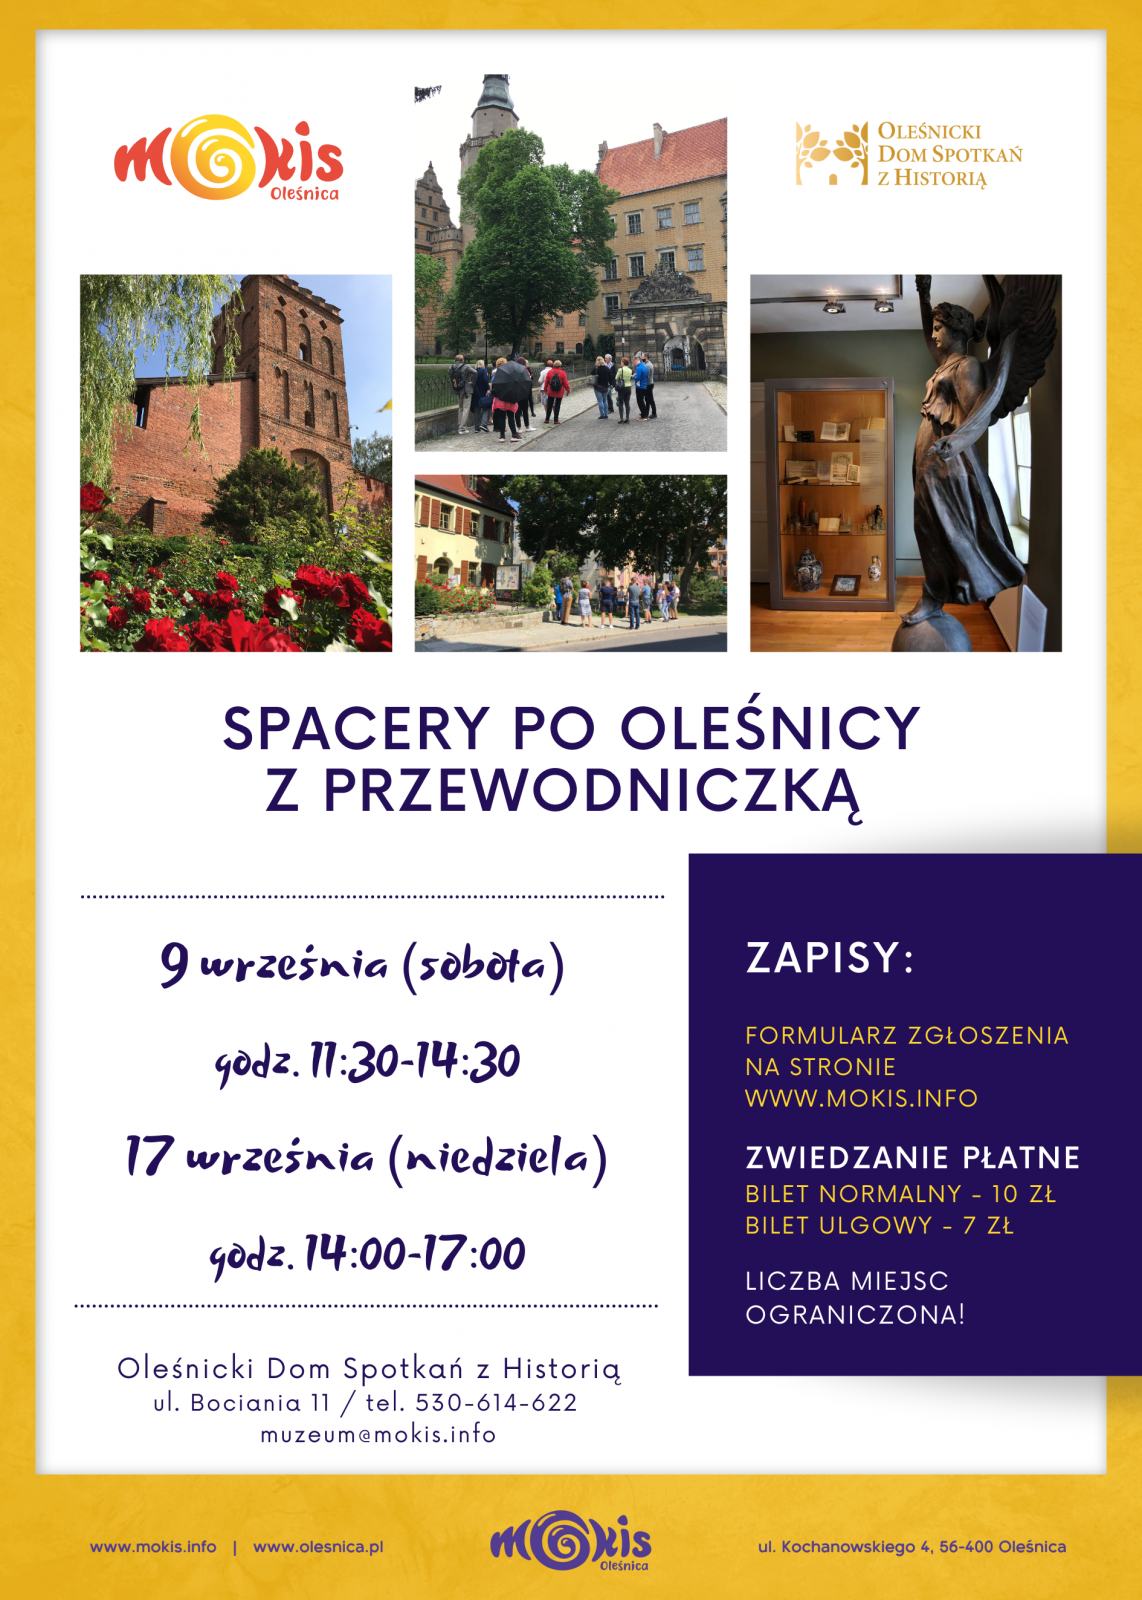 Plakat informacyjny dotyczący spacerów po Oleśnicy